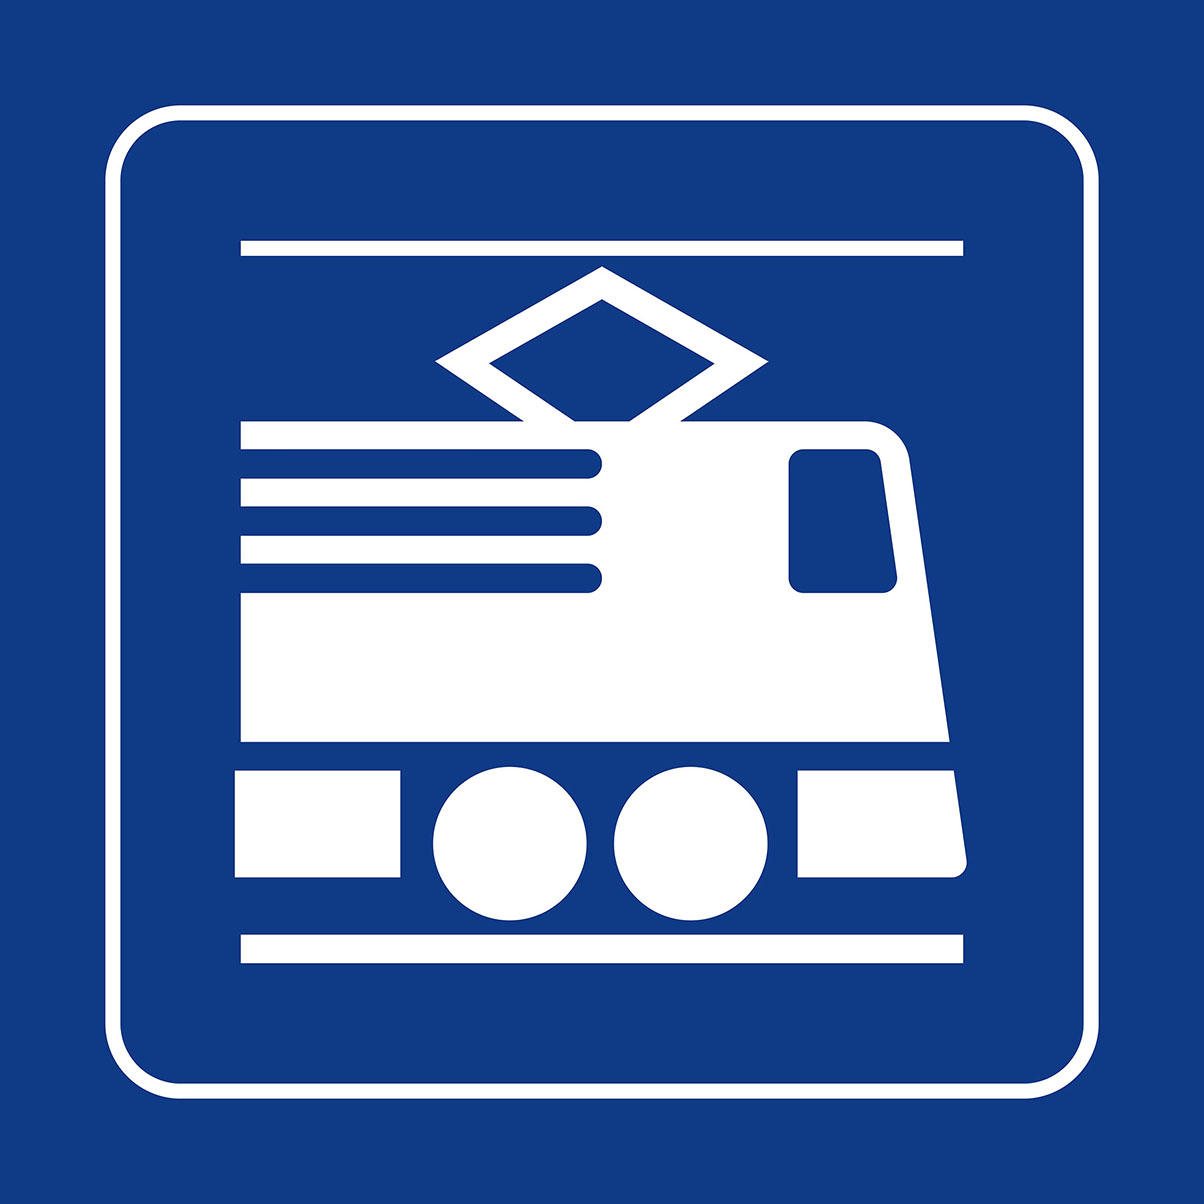 يافطة ترمز للقطار معتمدة في الشركة الفدرالية للسكك الحديدية السويسرية، 1992. 